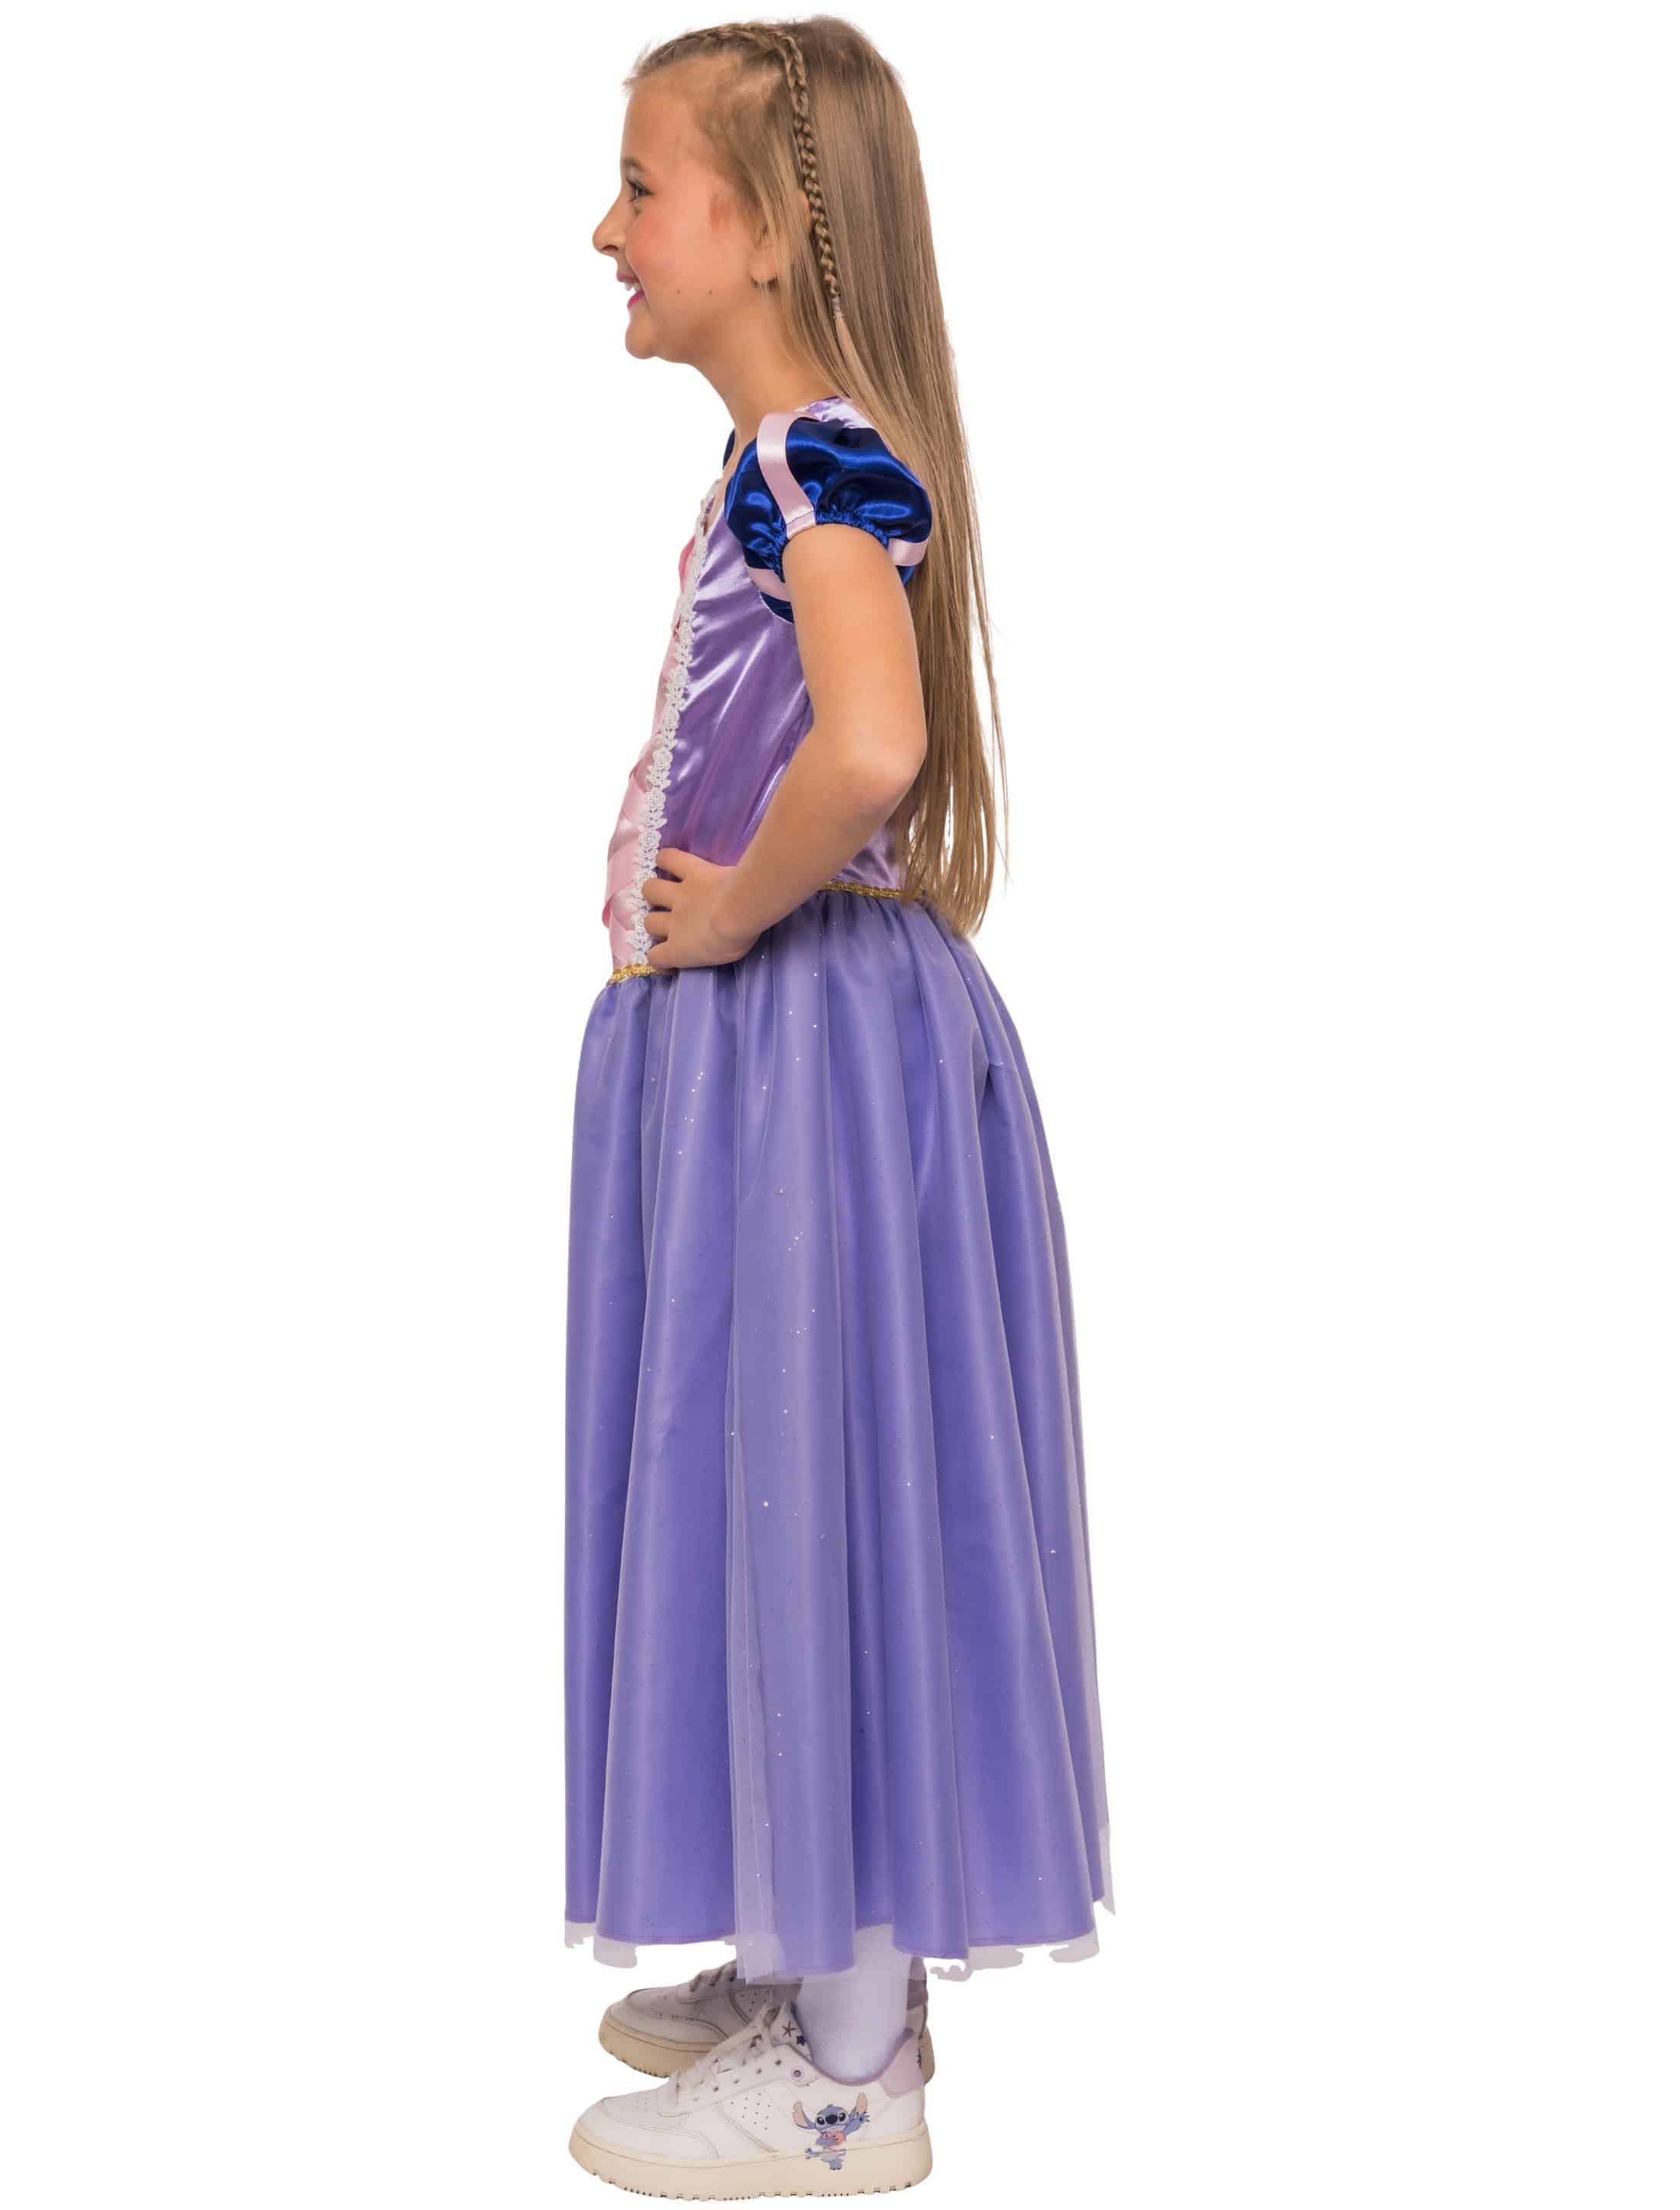 Kleid Prinzessin Mädchen lila 140